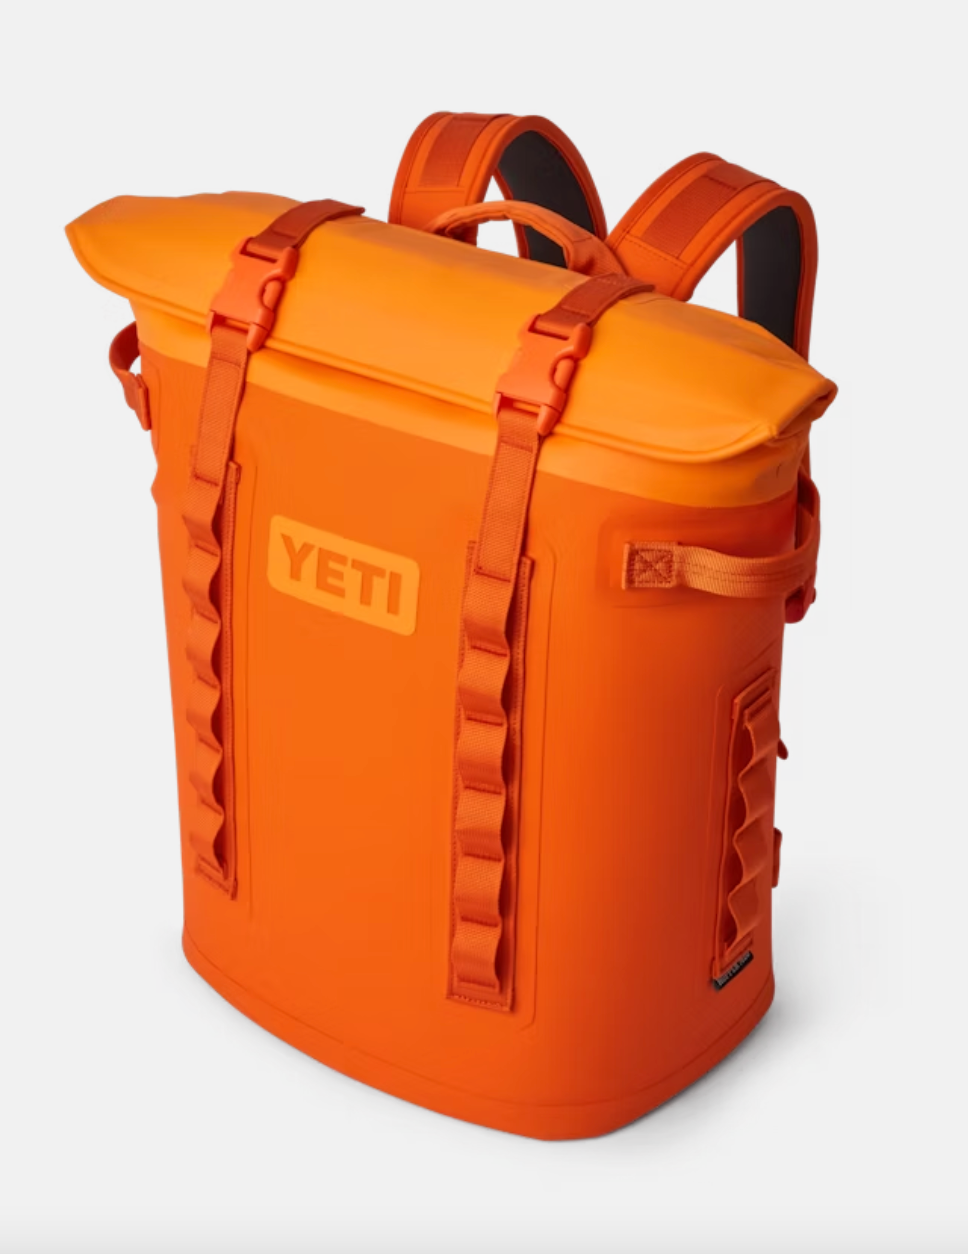 YETI Hopper Backpack M20 Orange/King Crab Orange